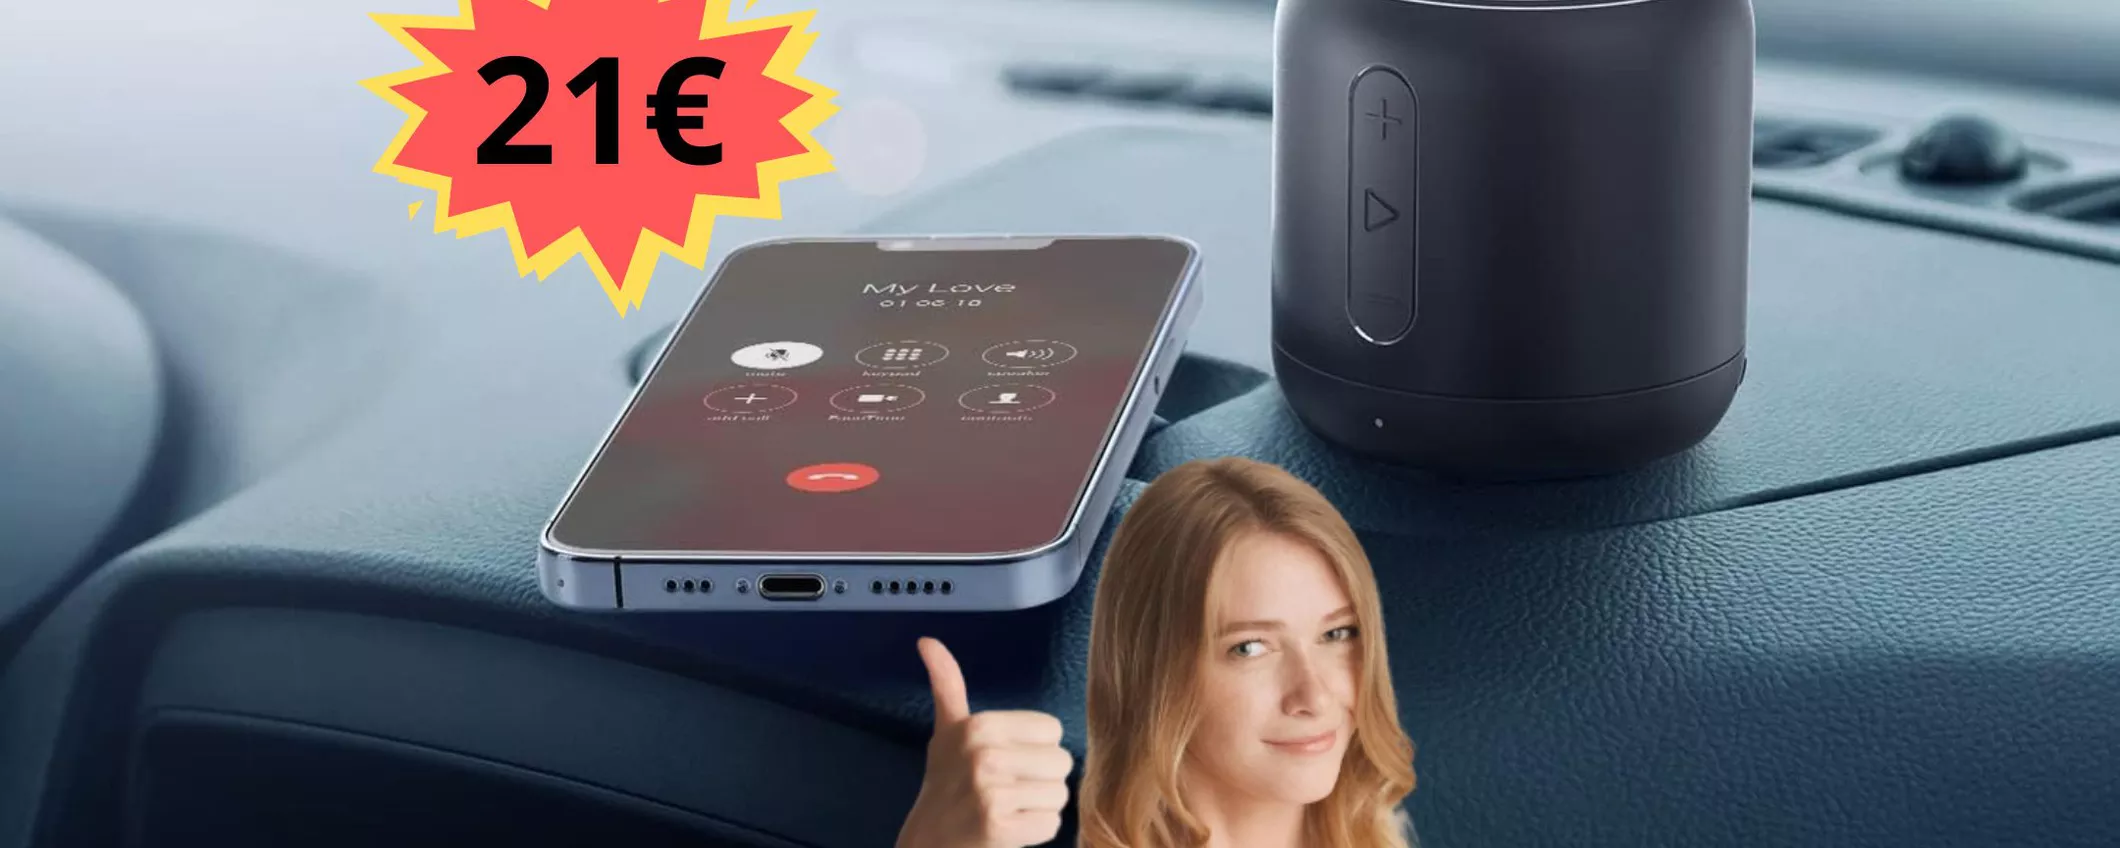 Con soli 21 euro puoi prendere questa CASSA TASCABILE Bluetooth incredibilmente potente!